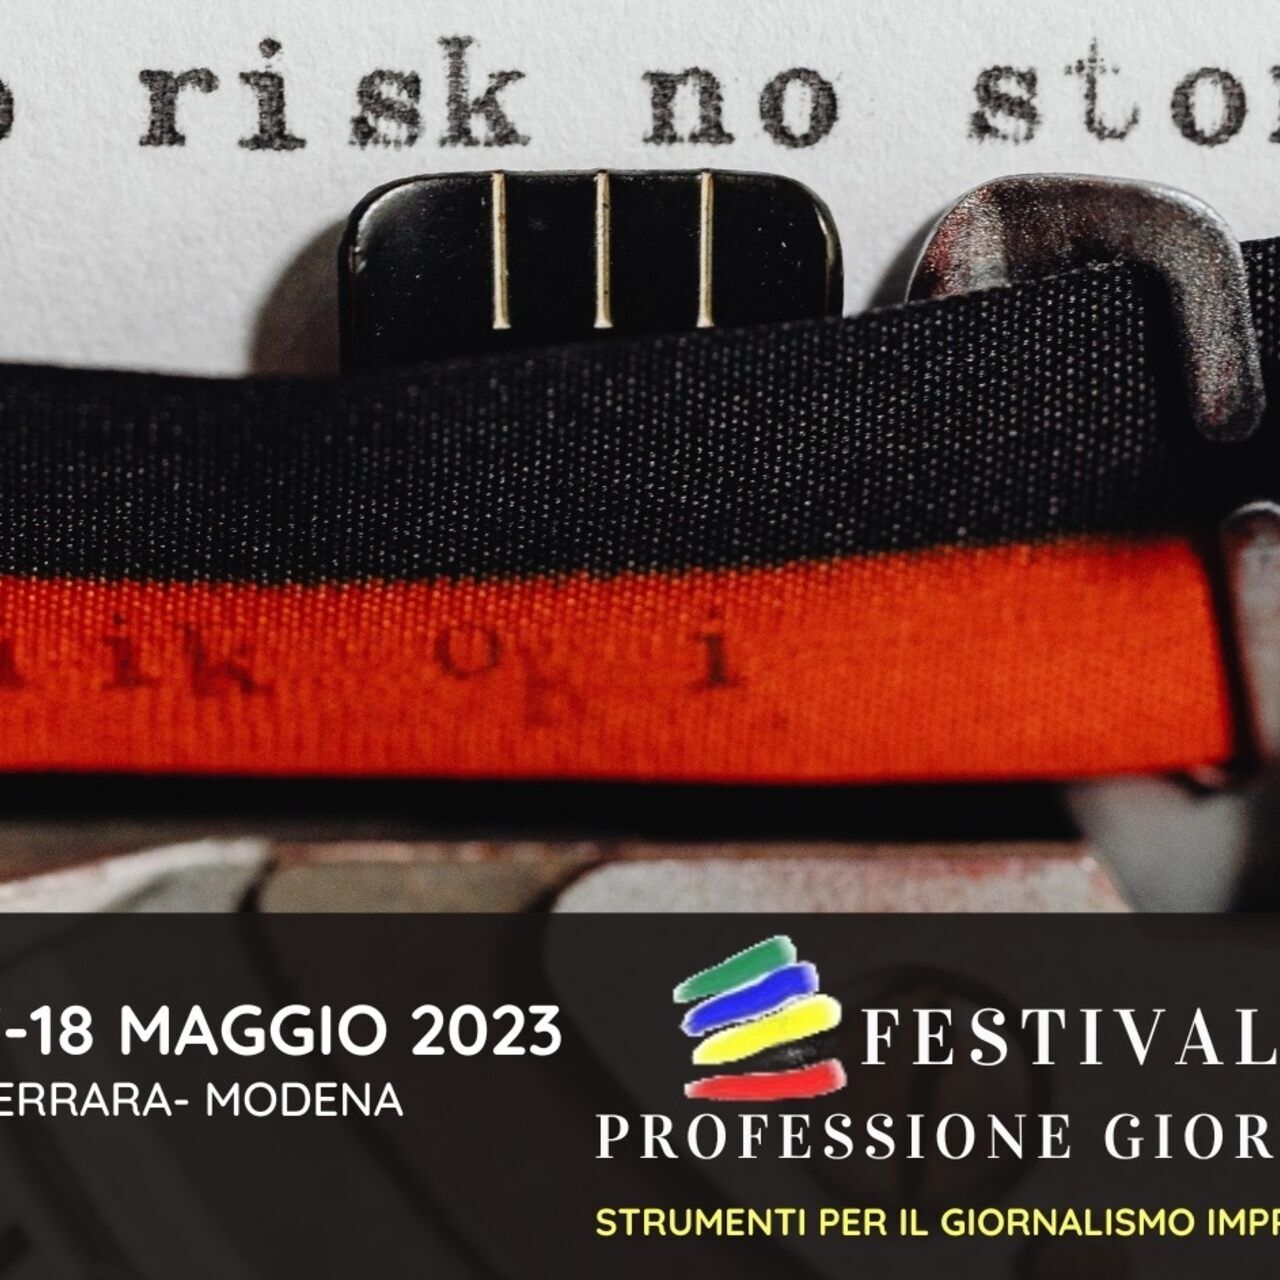 Professione del giornalista: il key visual dell’edizione 2023 del festival “Professione Giornalista” (Bologna, Ferrara, Modena, 15-16-17-18 maggio)